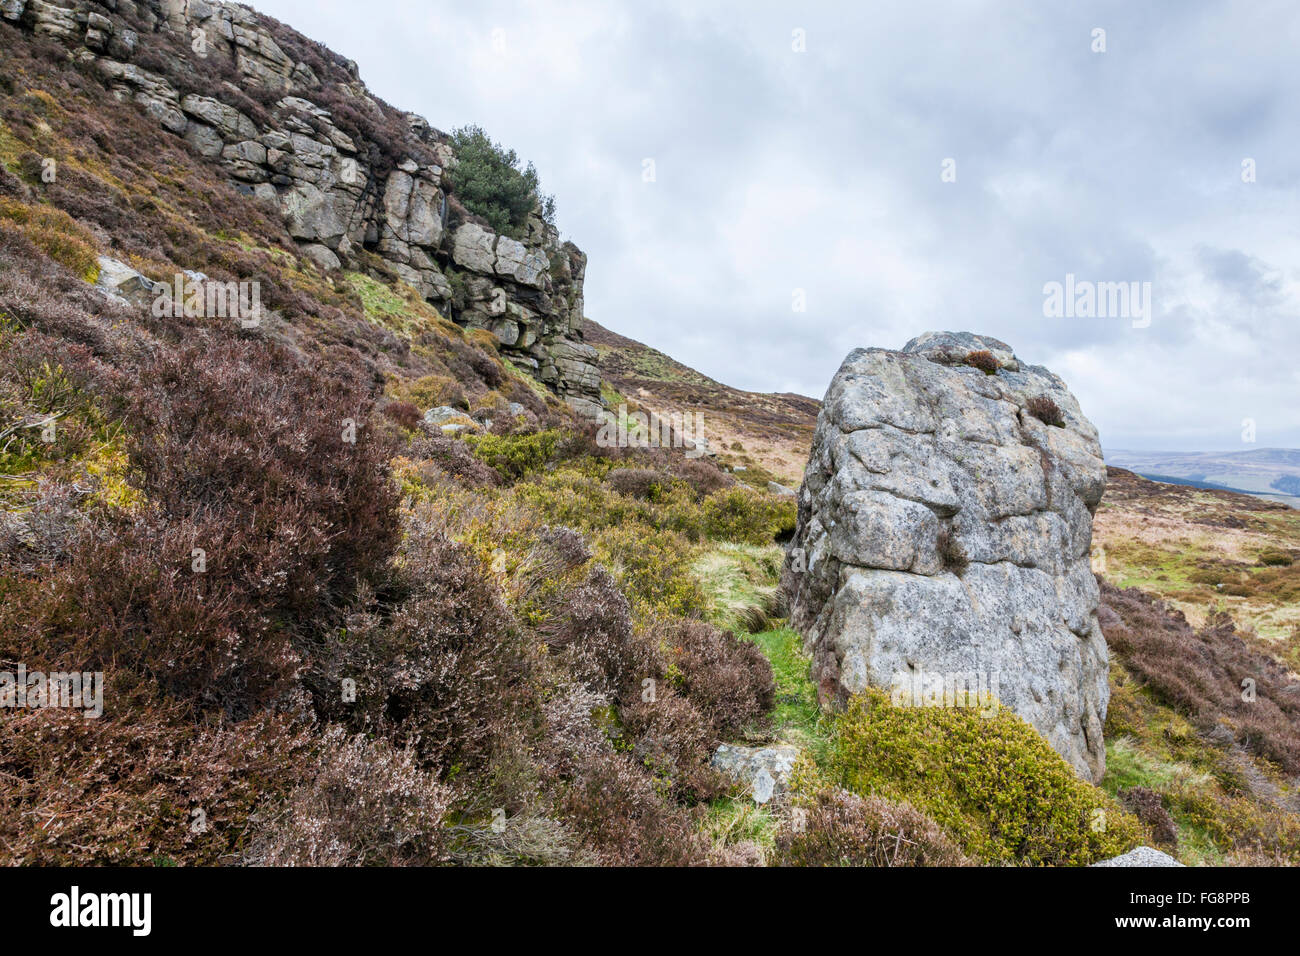 Pic noir moorland. Sur Crookstone rock pierre meulière de Moor au pied de la bordure orientale de Kinder Scout, Derbyshire Peak District, England, UK Banque D'Images